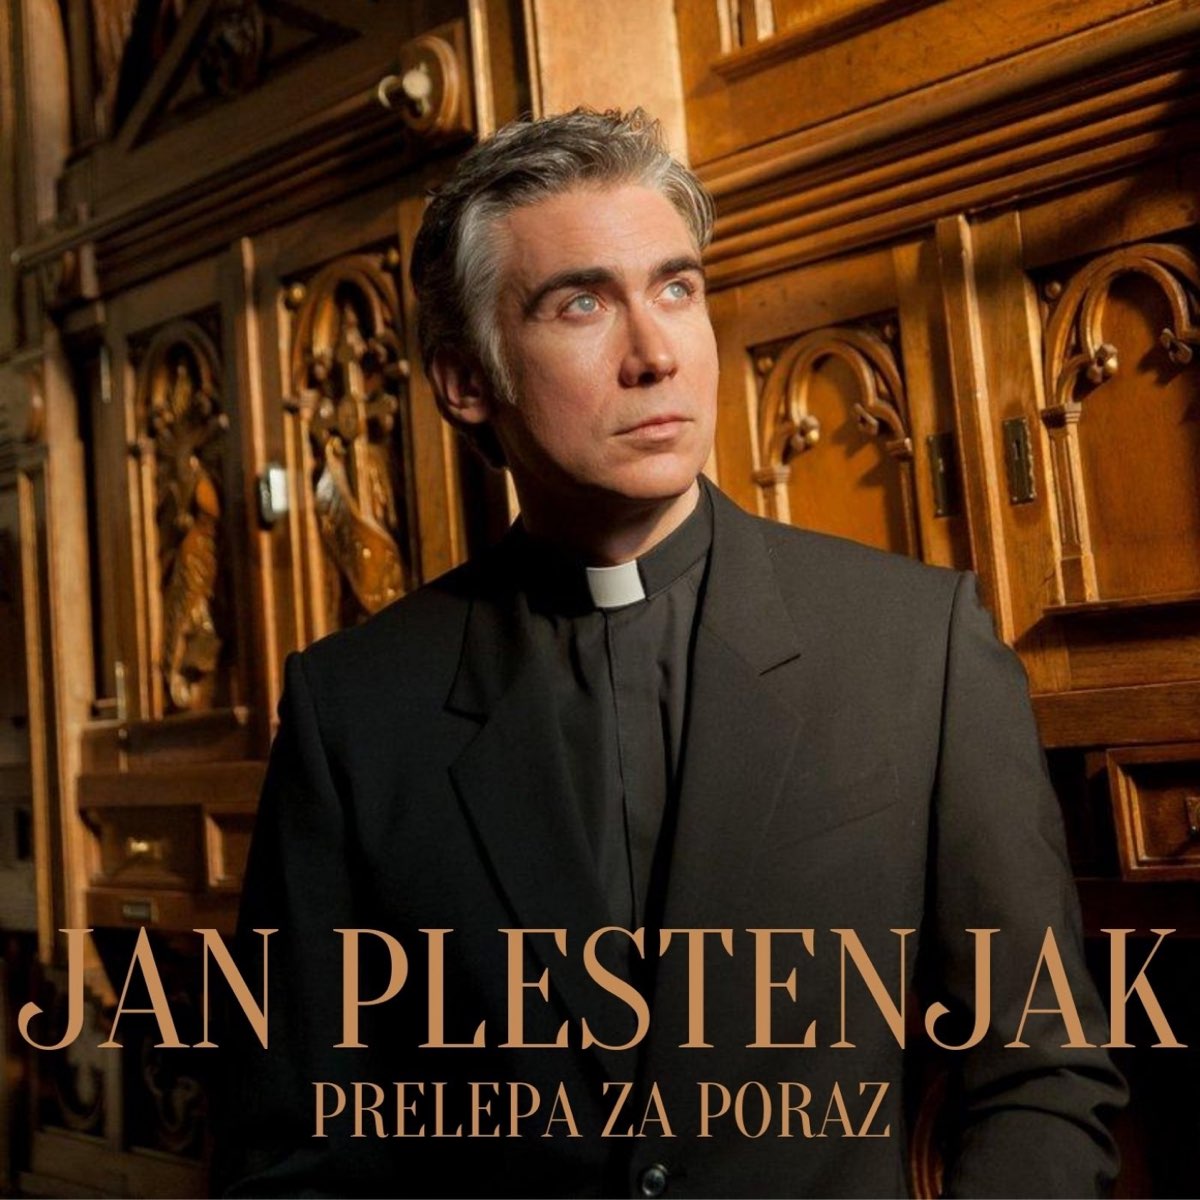 Prelepa za poraz - Single - Album by Jan Plestenjak - Apple Music